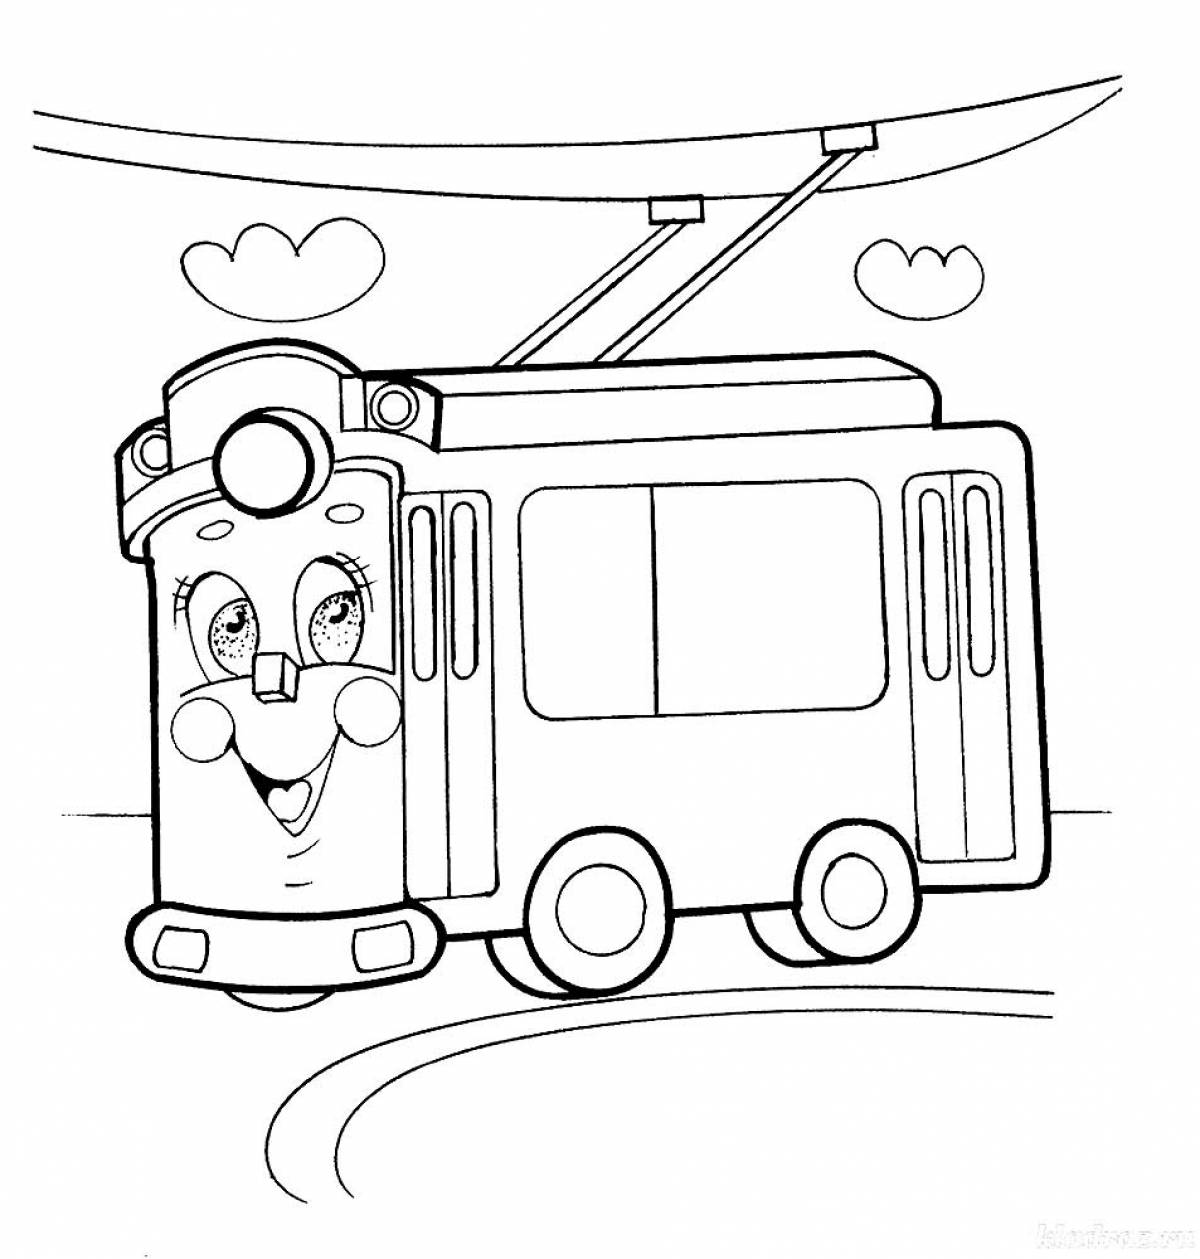 Cheerful trolleybus